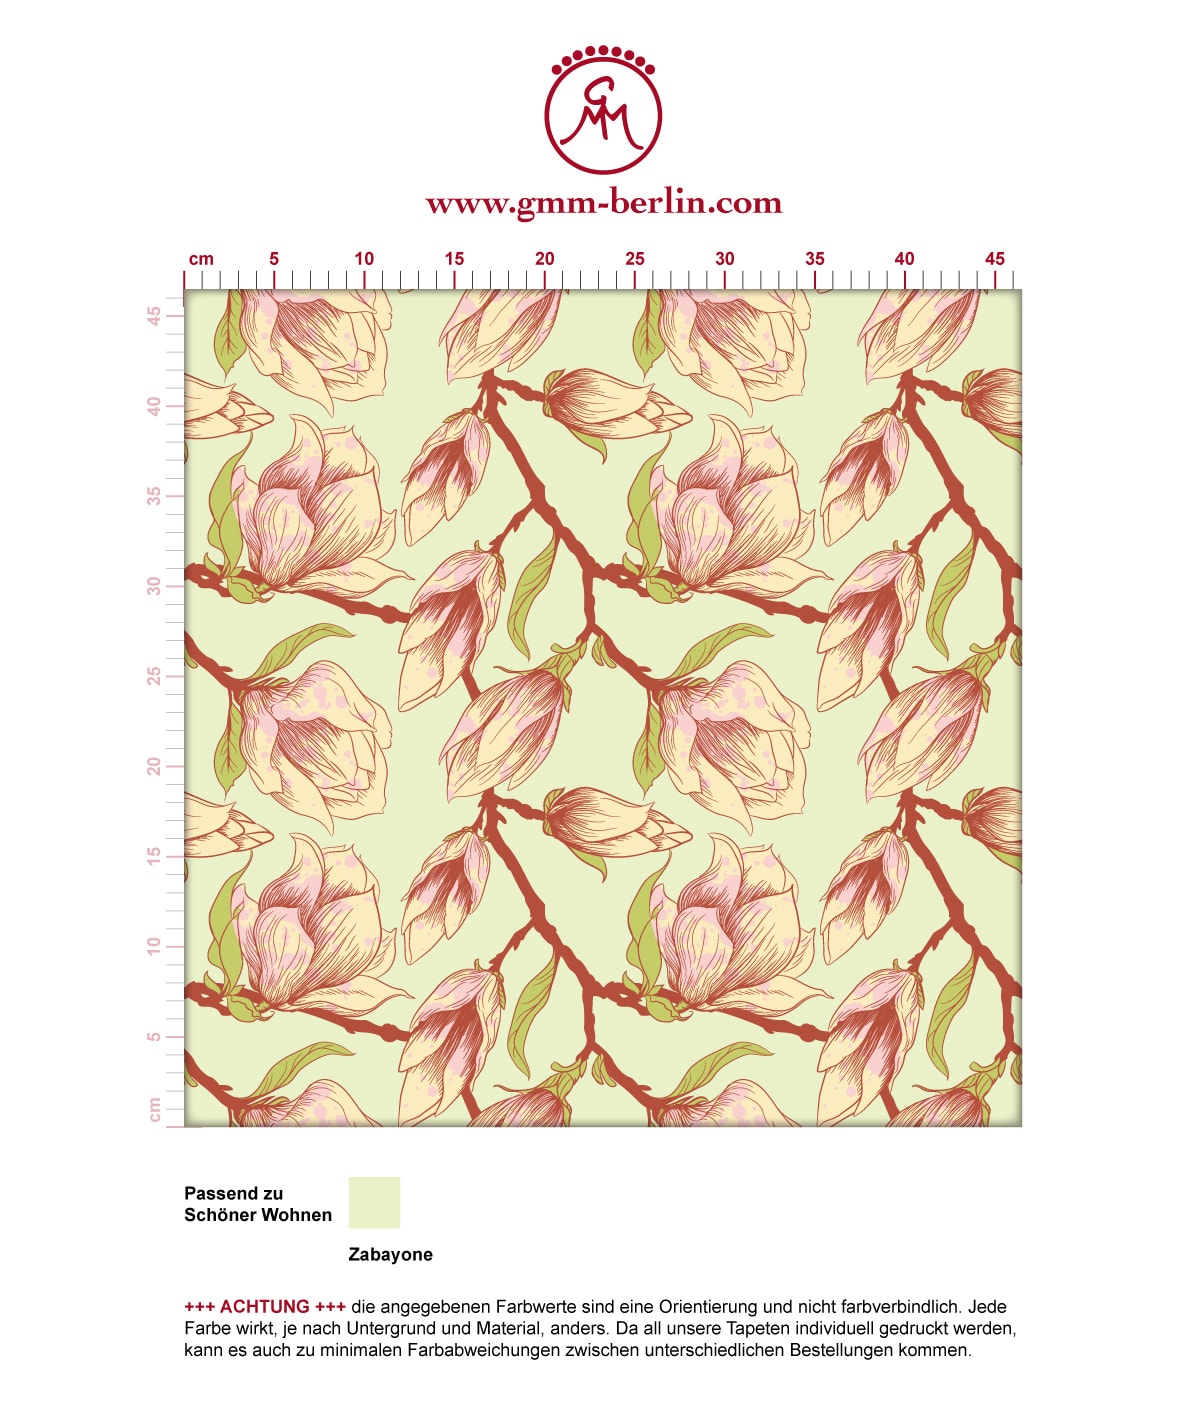 Zarte edle Blüten Tapete "Blooming Magnolia" mit blühender Magnolie angepasst an Schöner Wohnen Wandfarben. Aus dem GMM-BERLIN.com Sortiment: Schöne Tapeten in der Farbe: Erbsen grün